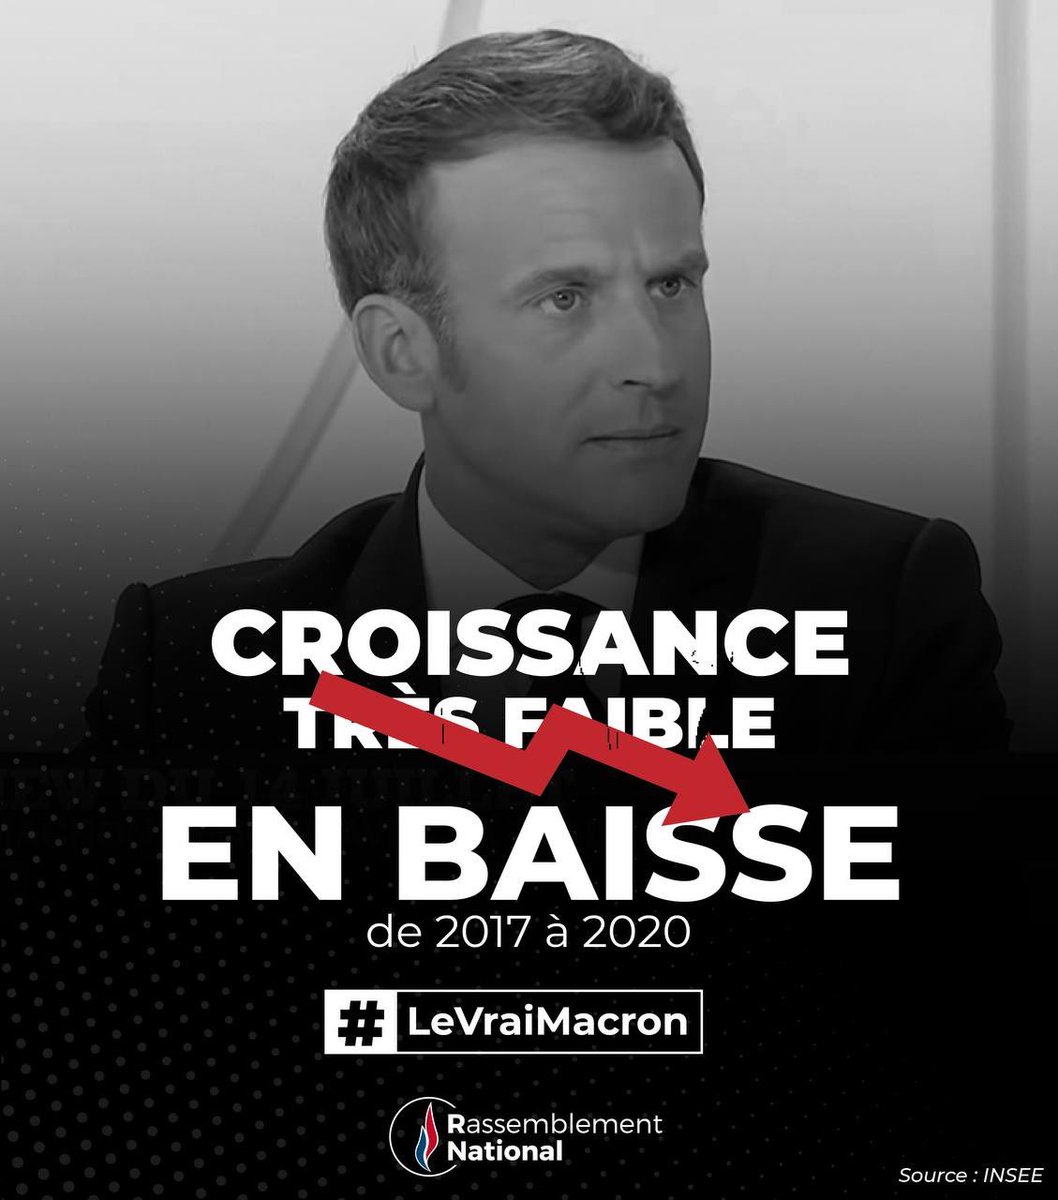 #LeVraiMacron #MacronTF1